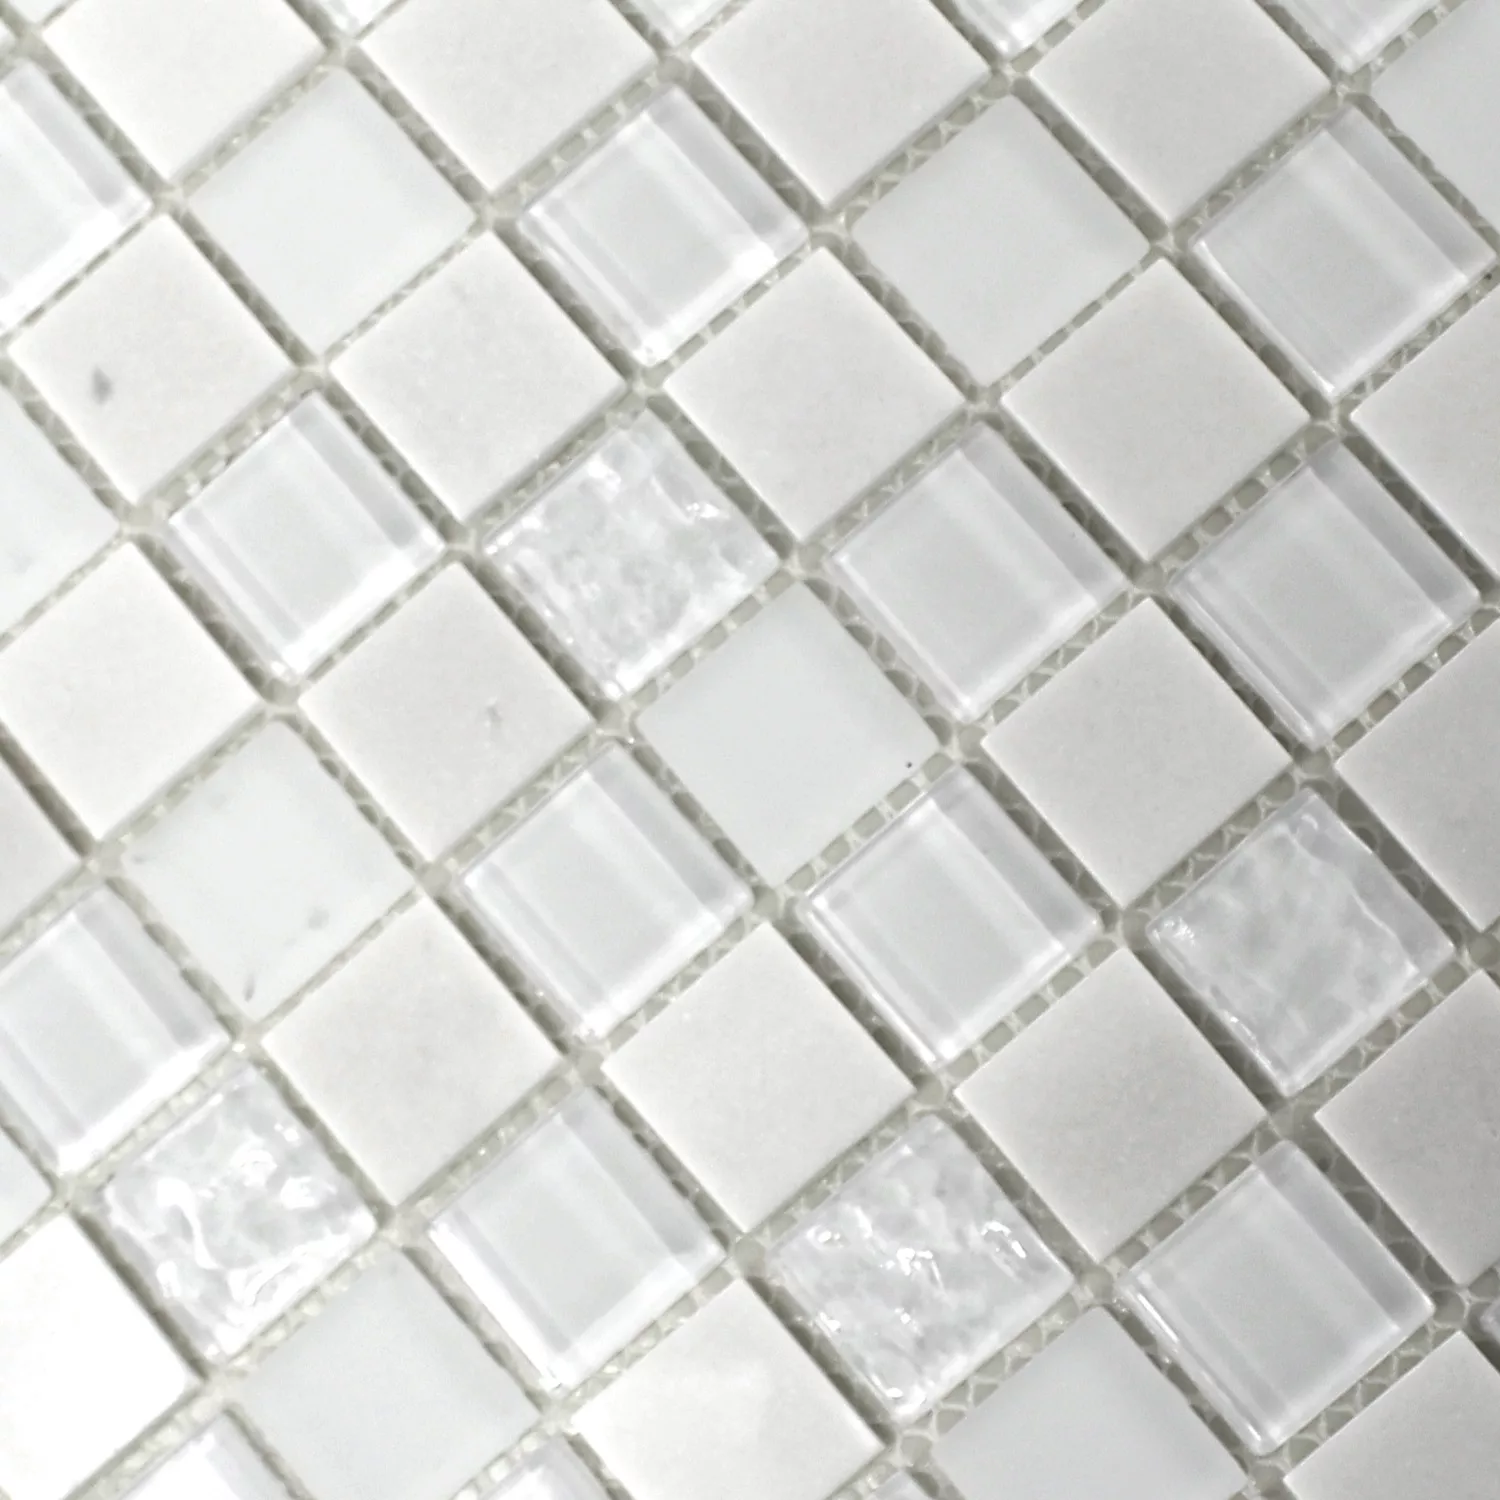 Samoljepljivi Mozaik Prirodni Kamen Staklo Mix Bijela